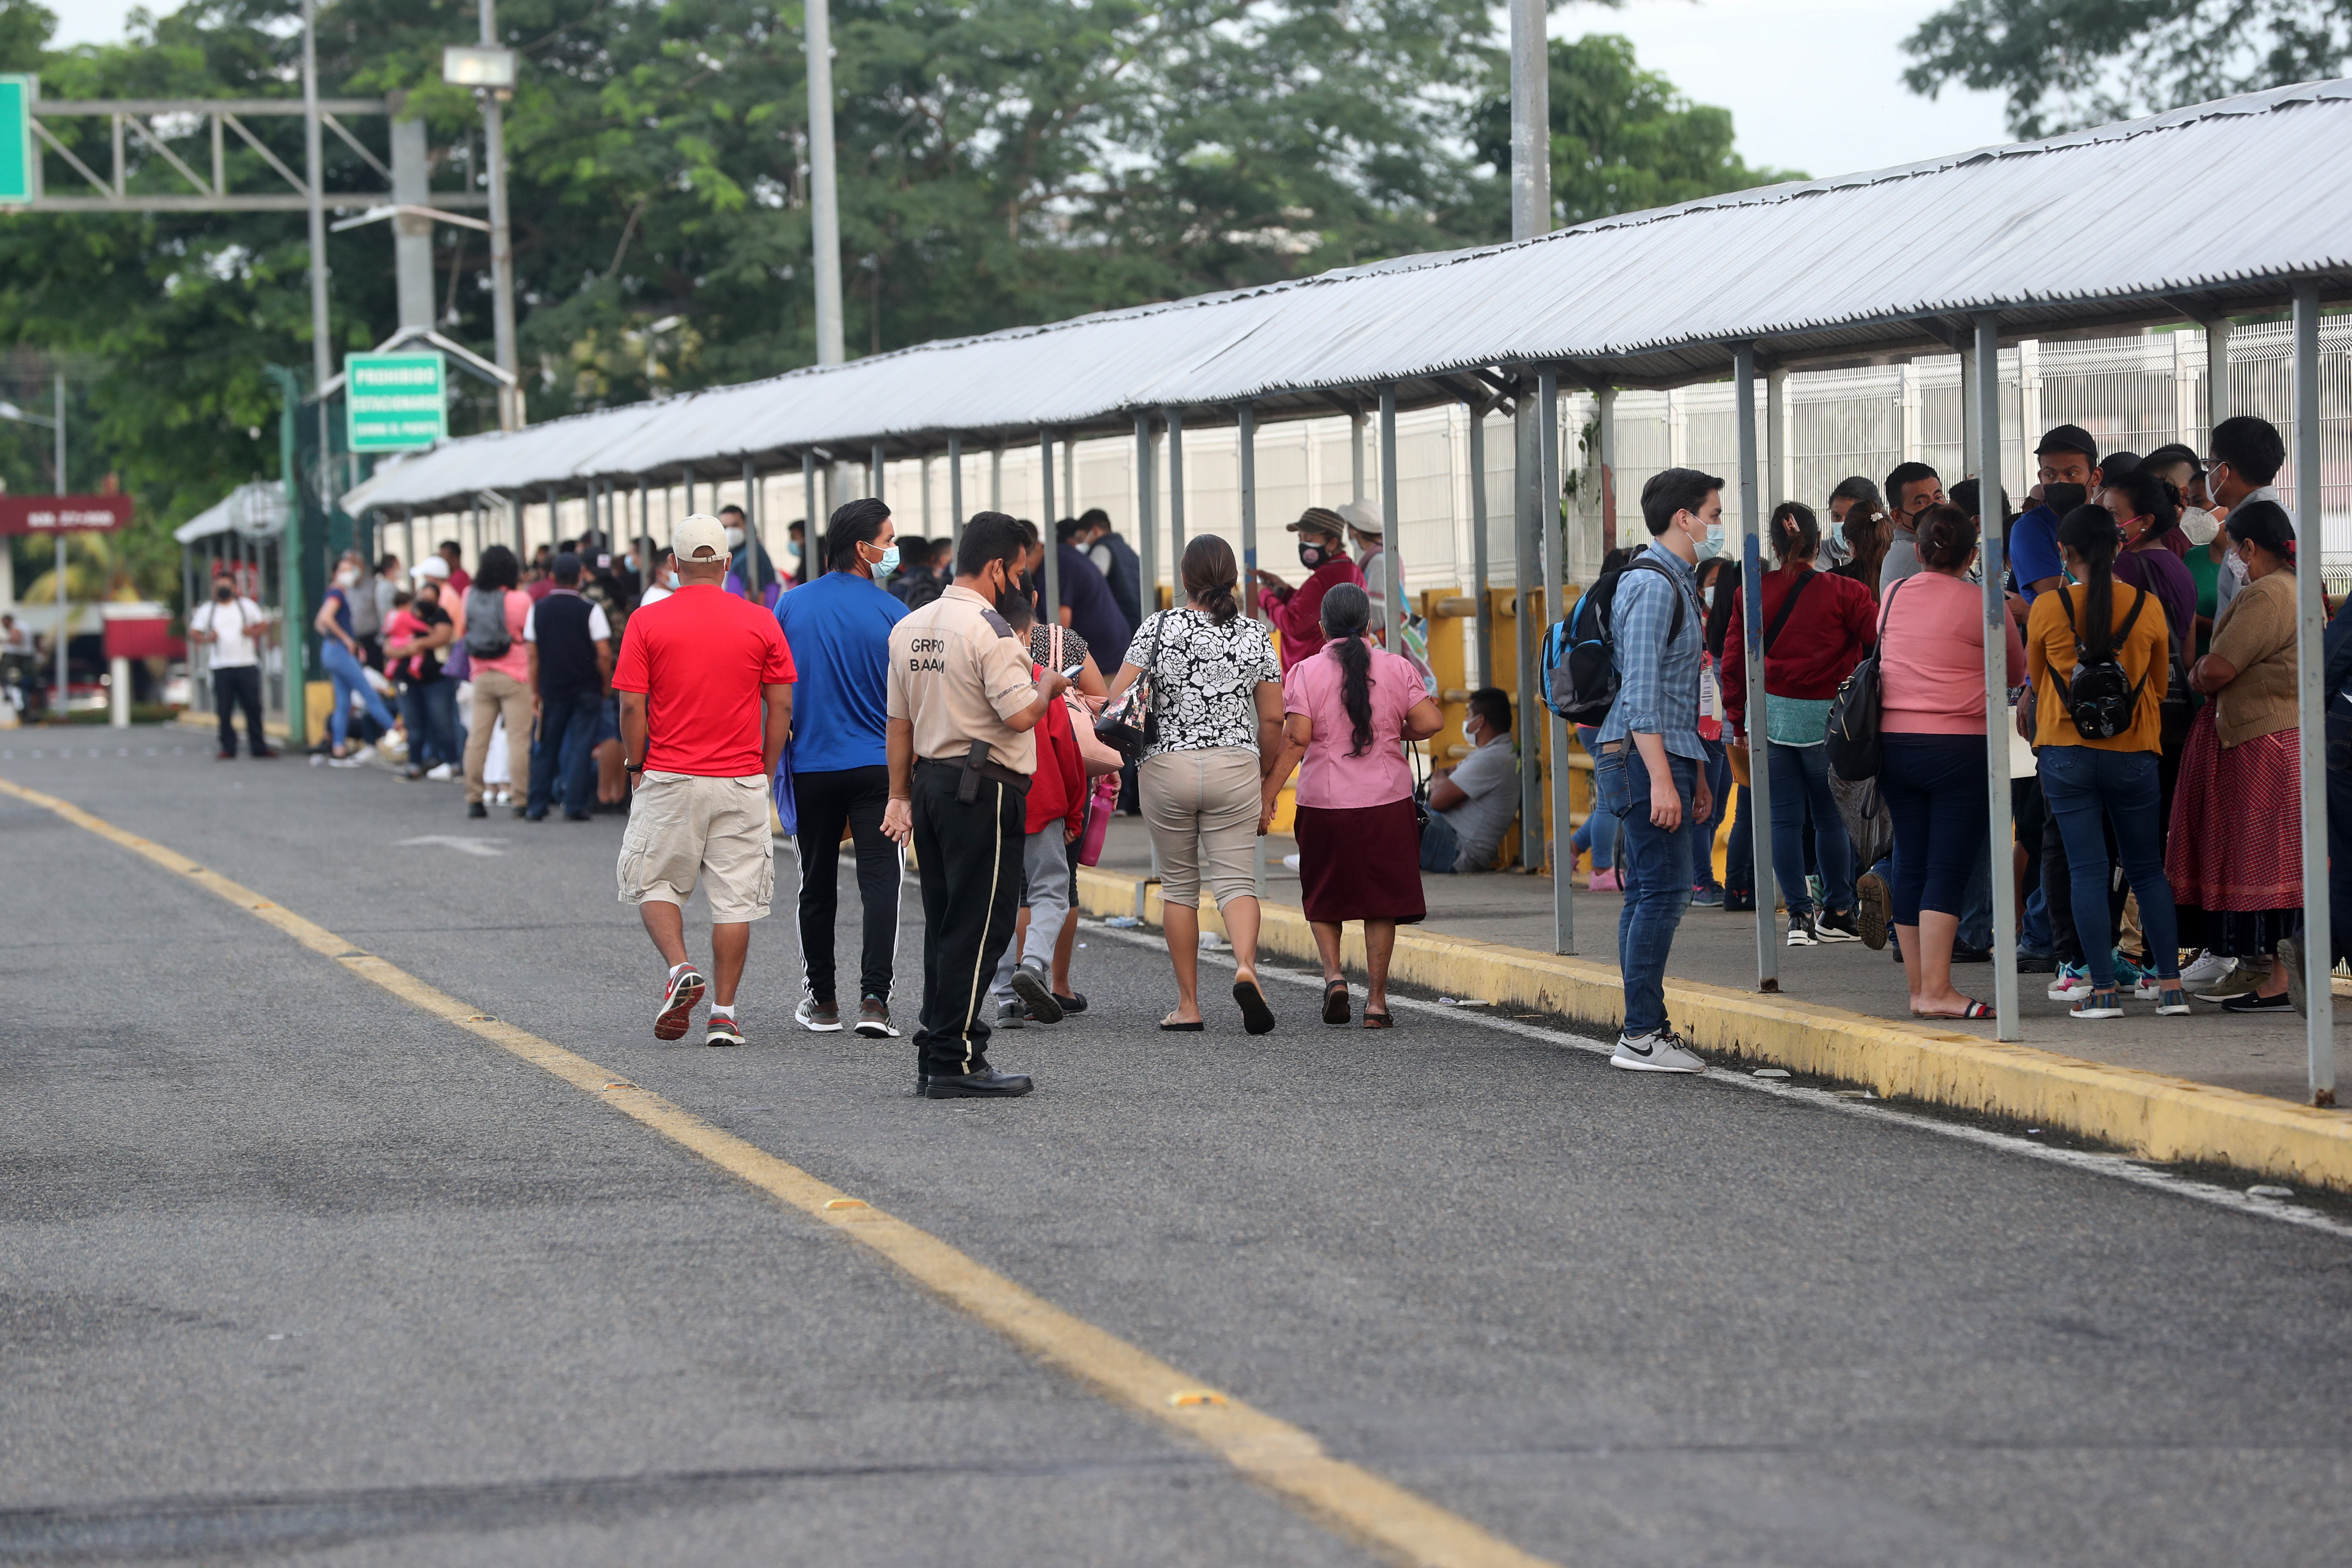 Guatemaltecos viajan a Tapachula para ser vacunados contra el covid-19. (Foto Prensa Libre: Hemeroteca PL)